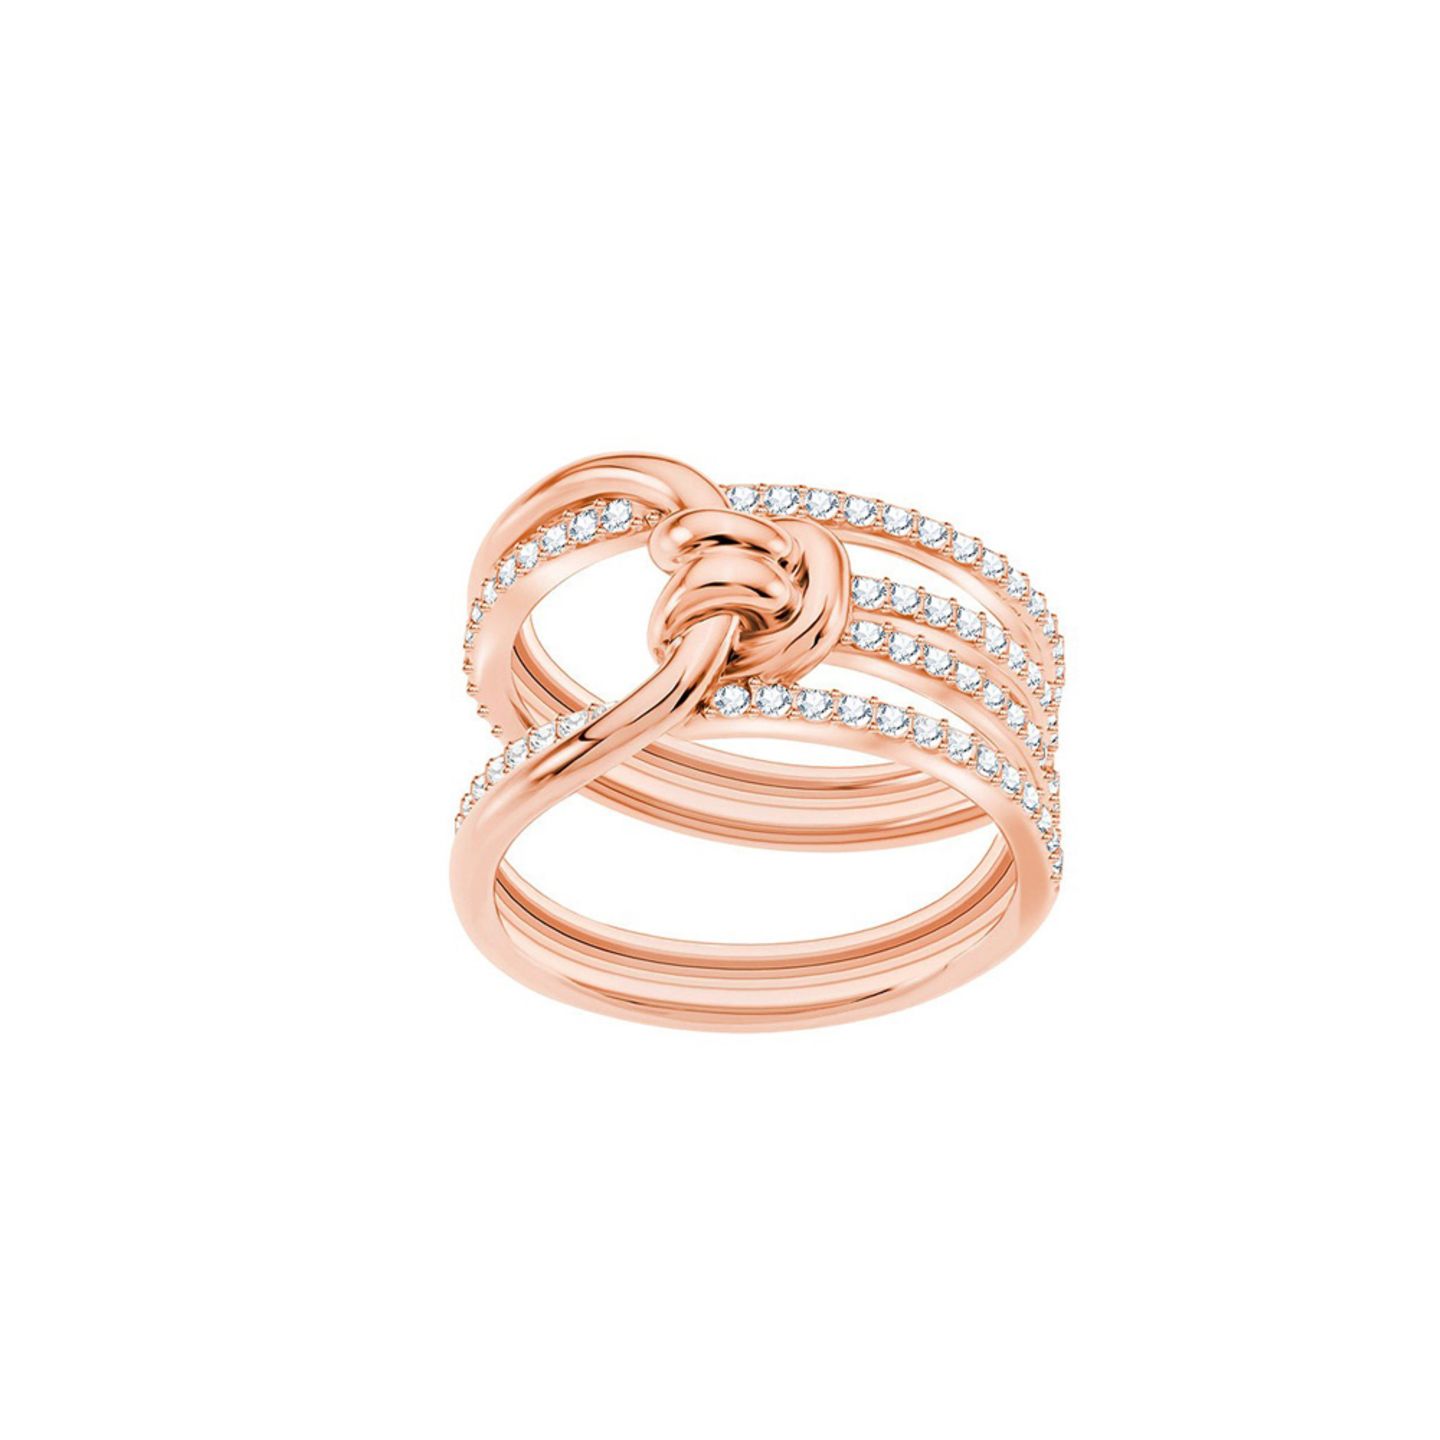 Dieser Ring vereint gleich zwei große Schmucktrends: Die Farbe Roségold und süße Knotendetails. Erhältlich über Swarovski, um 120 Euro.